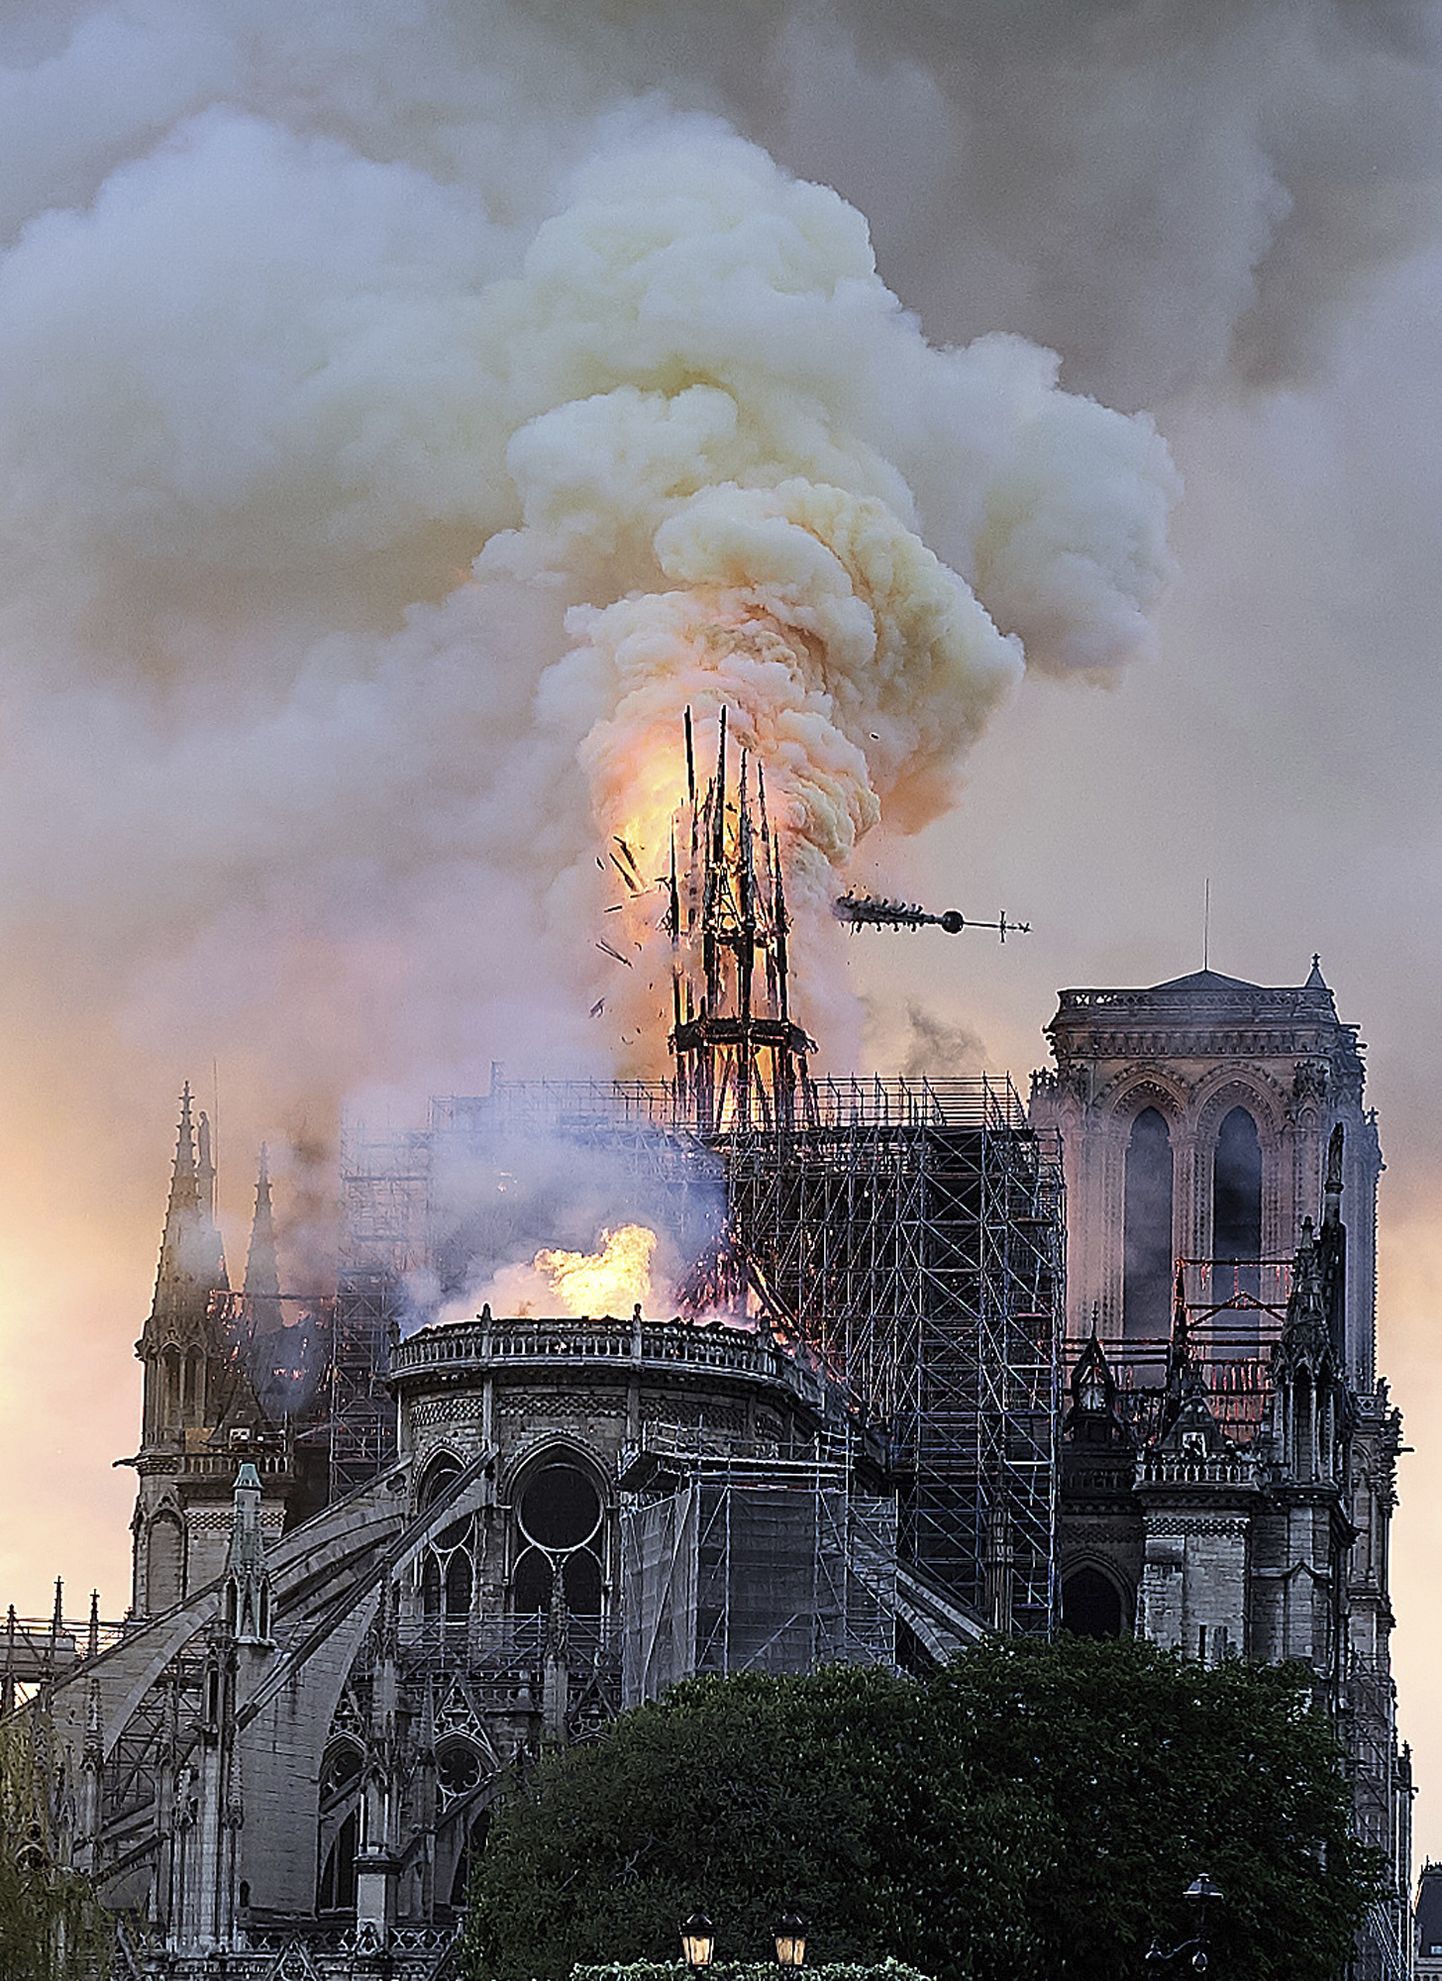 Esmaspäeva õhtul kella kaheksa paiku Eesti aja järgi lahvatas Pariisis Notre-Dame'i katedraalis tulekahju. Veel pole põlengu põhjuseid ametlikult kommenteeritud.